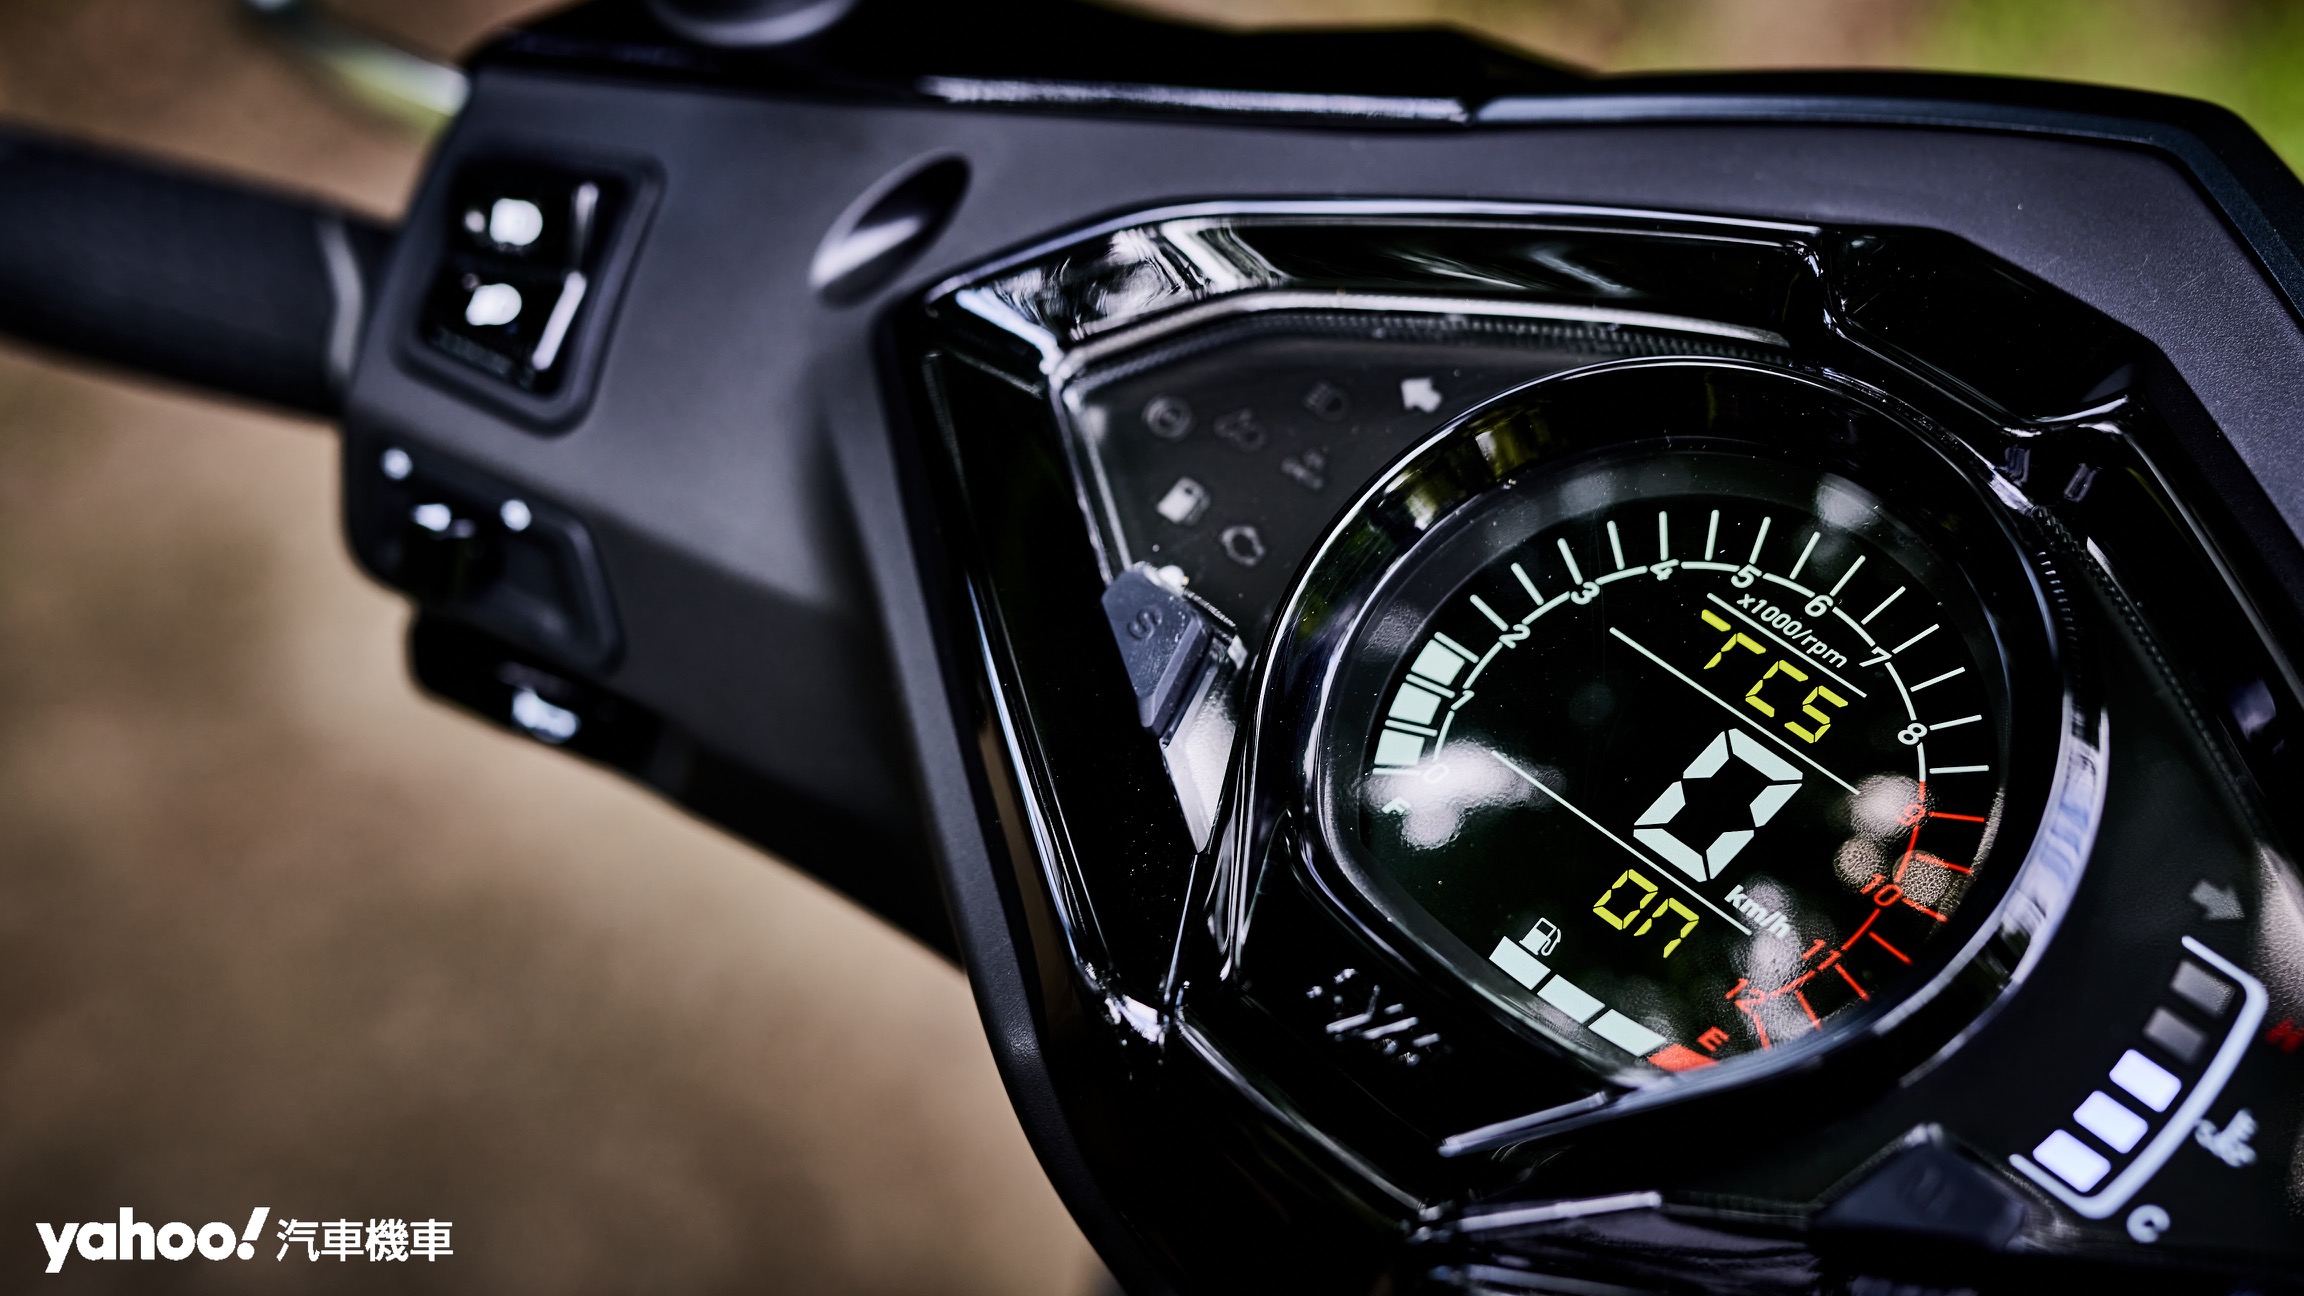 以儀表整合按鍵的形式加入TCS更強化了車輛在視覺上的一體性。